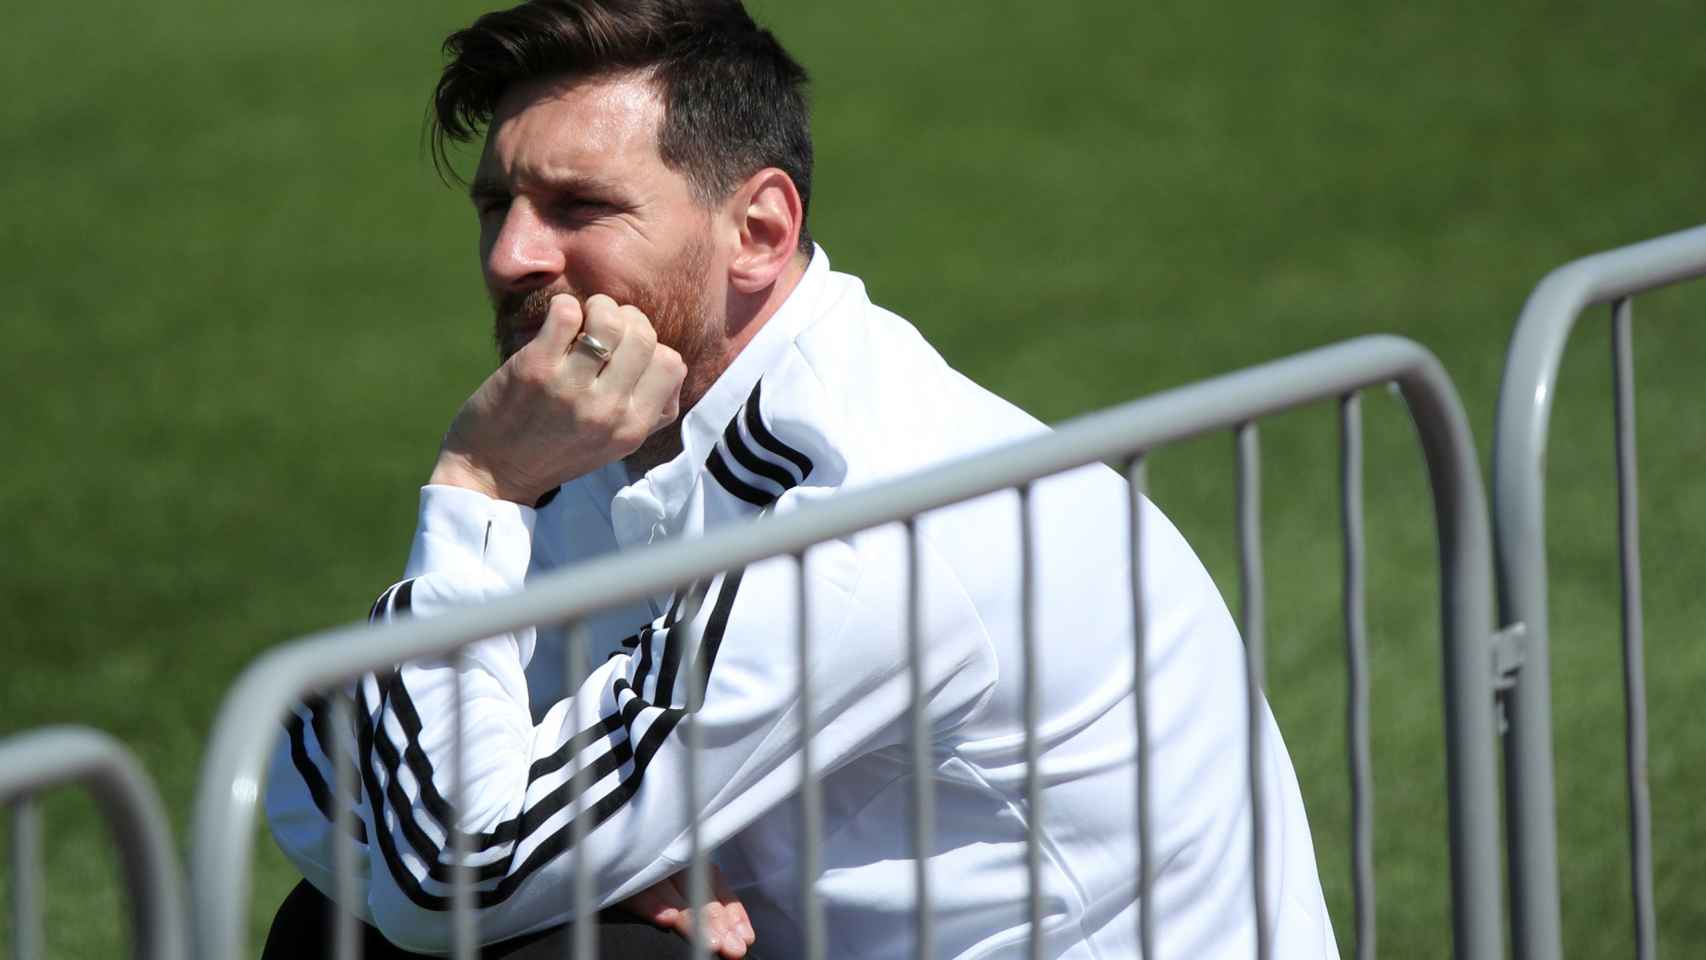 Messi dubitativo en un entrenamiento con Argentina.